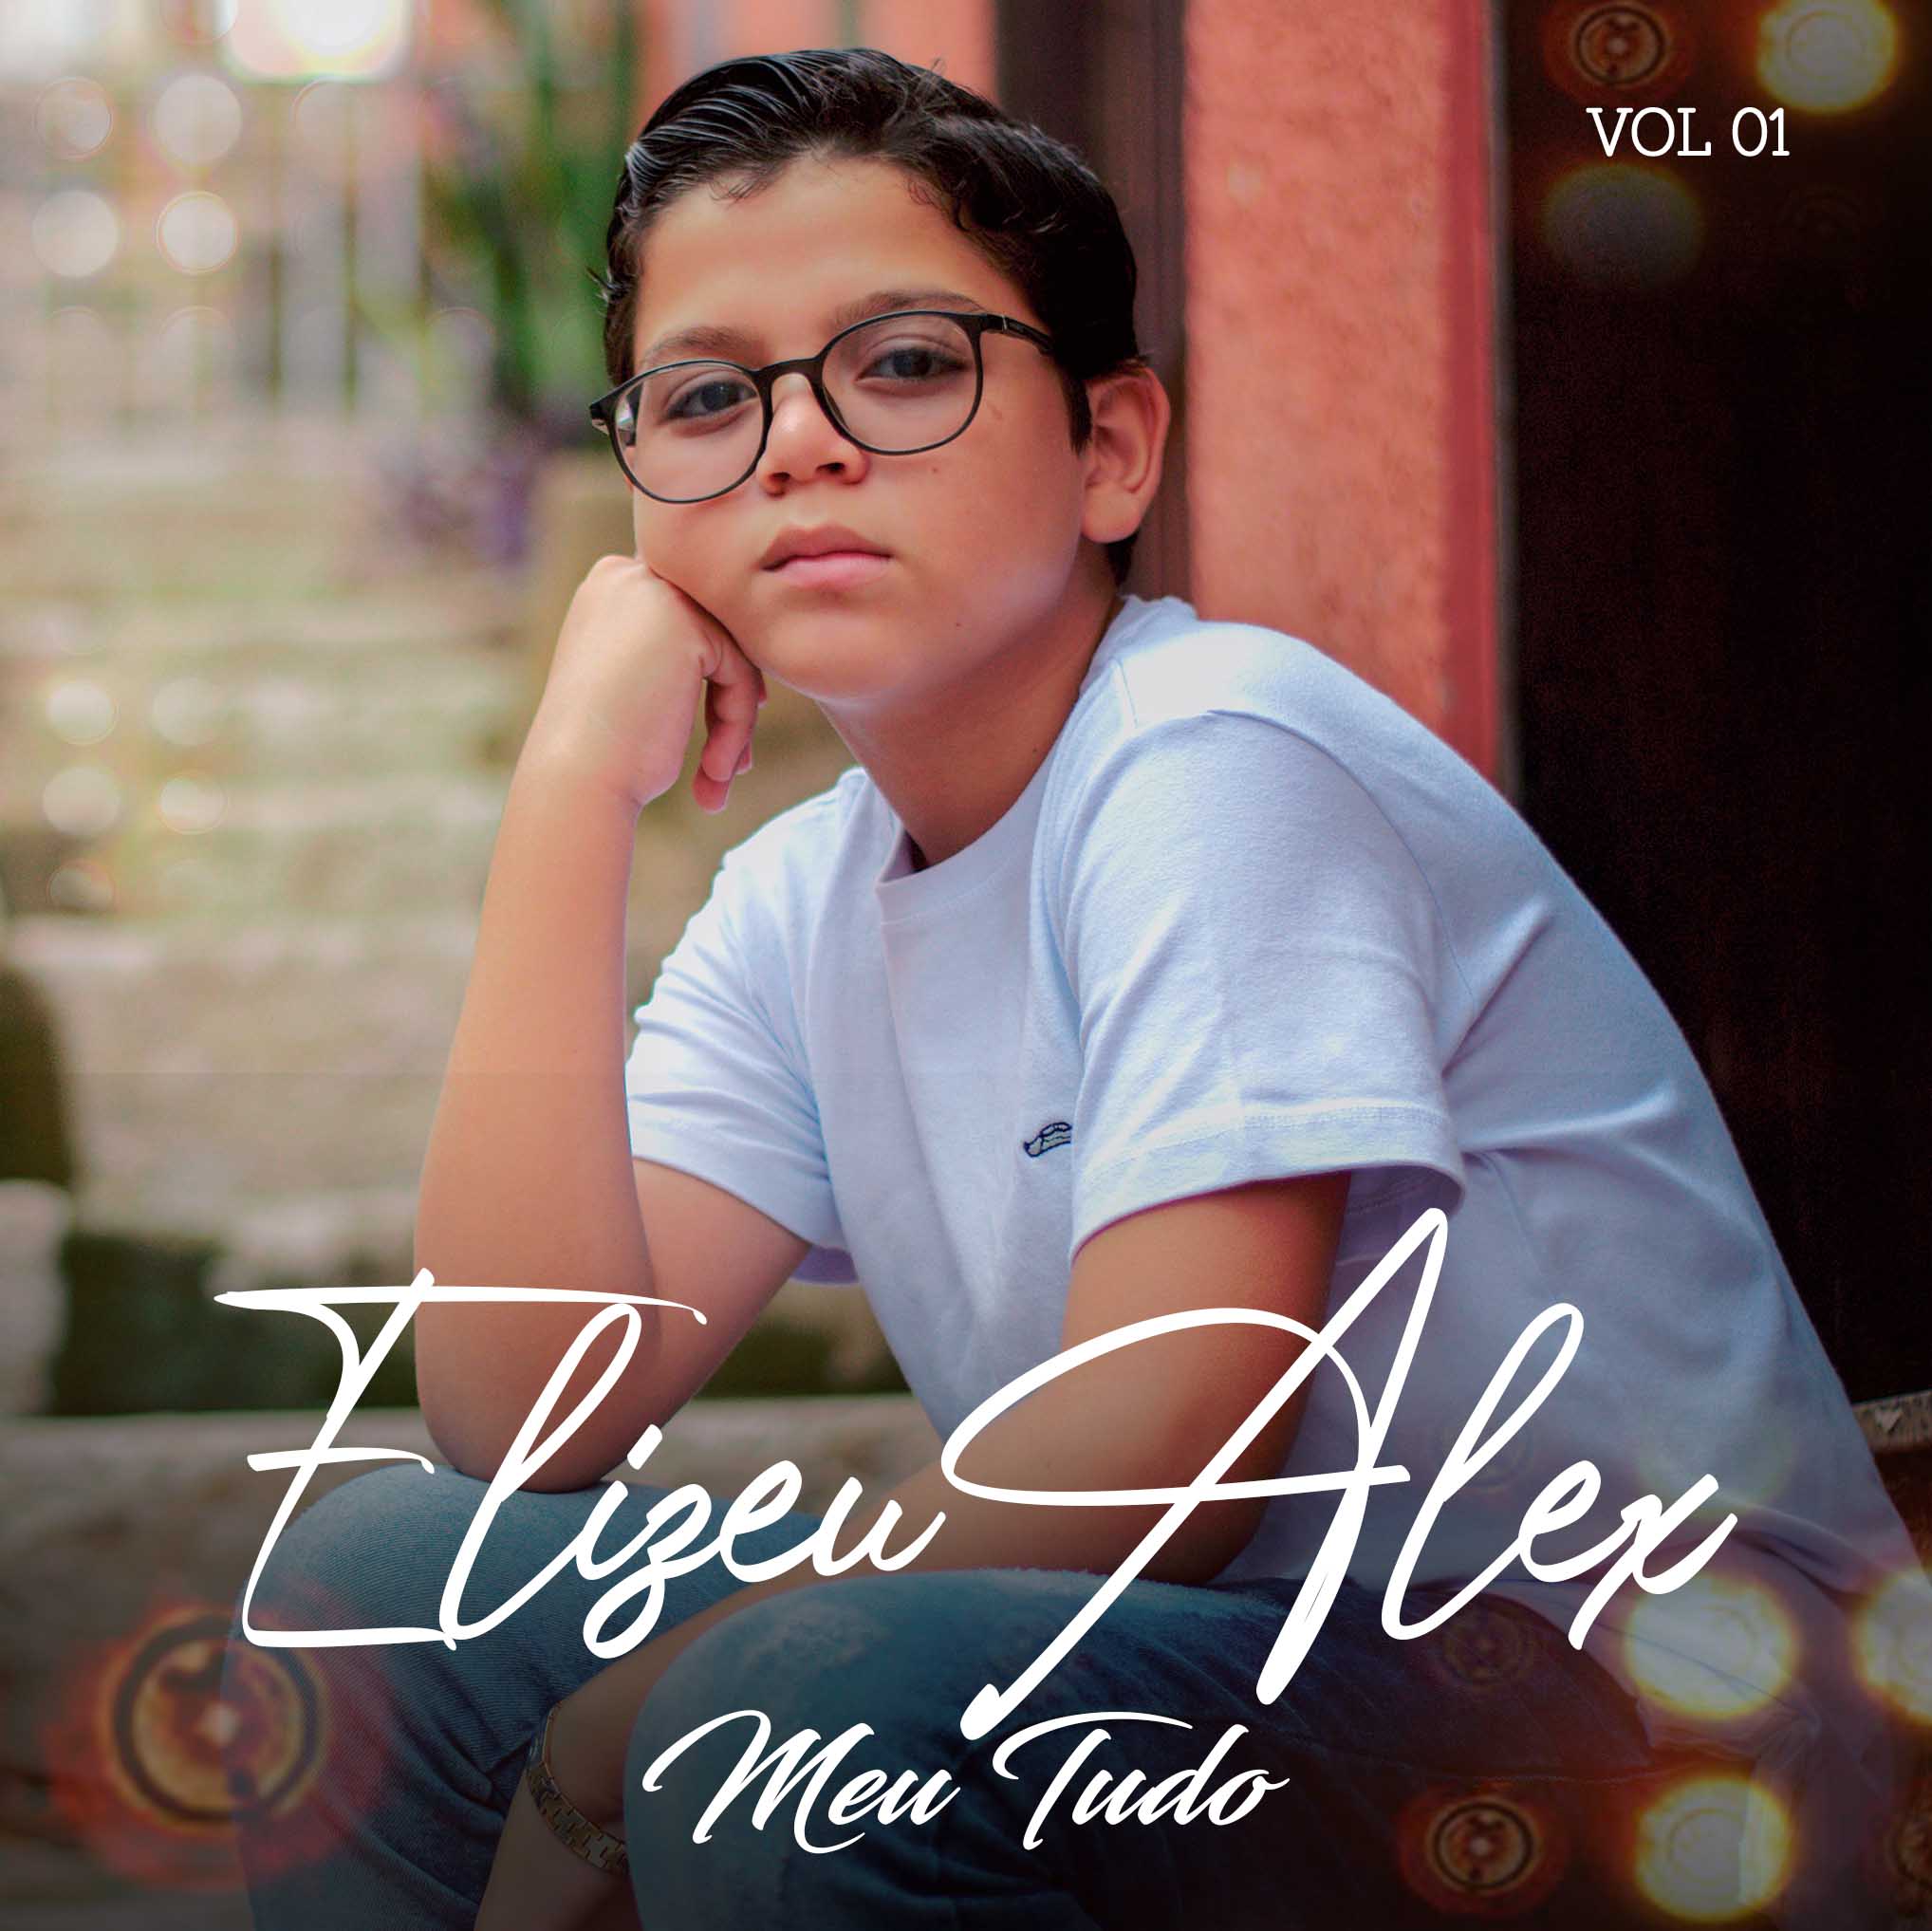 Elizeu Alex lança nas plataformas digitais seu primeiro EP “Meu Tudo”